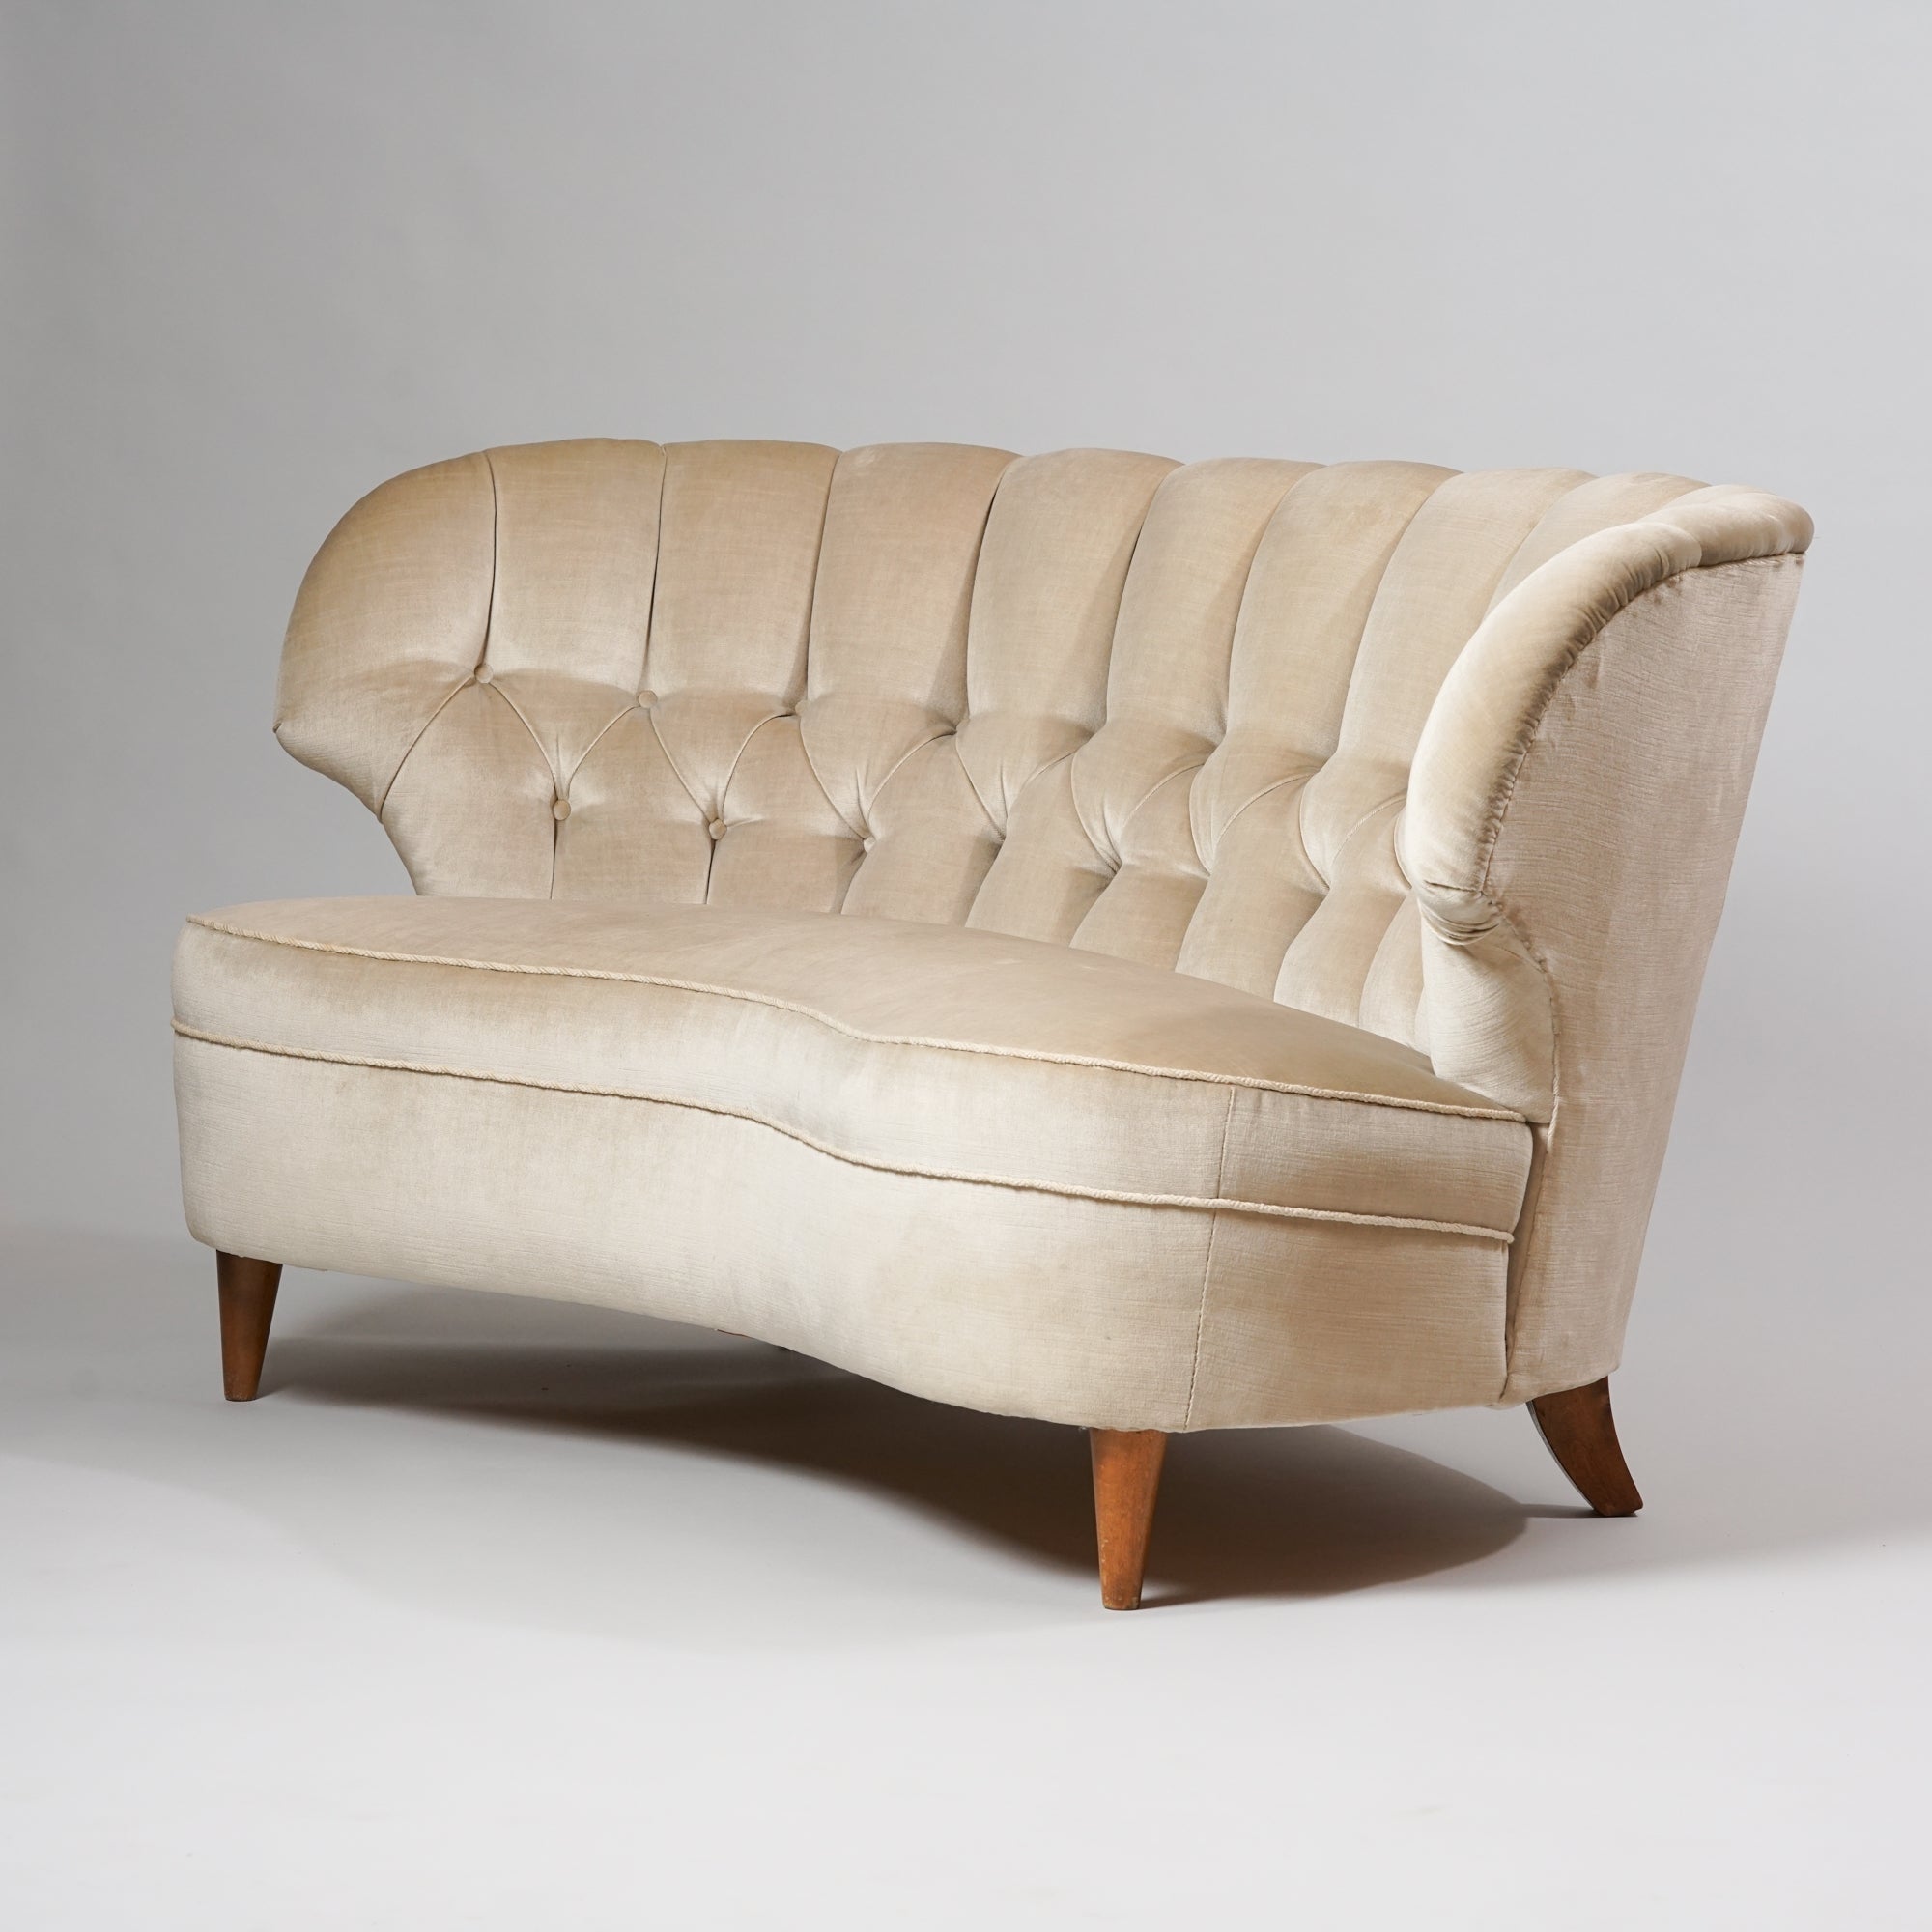 Kaareva sohva, jonka jalat ovat koivua. Sohva on päällystetty kerman väriseen plyysikankaaseen.